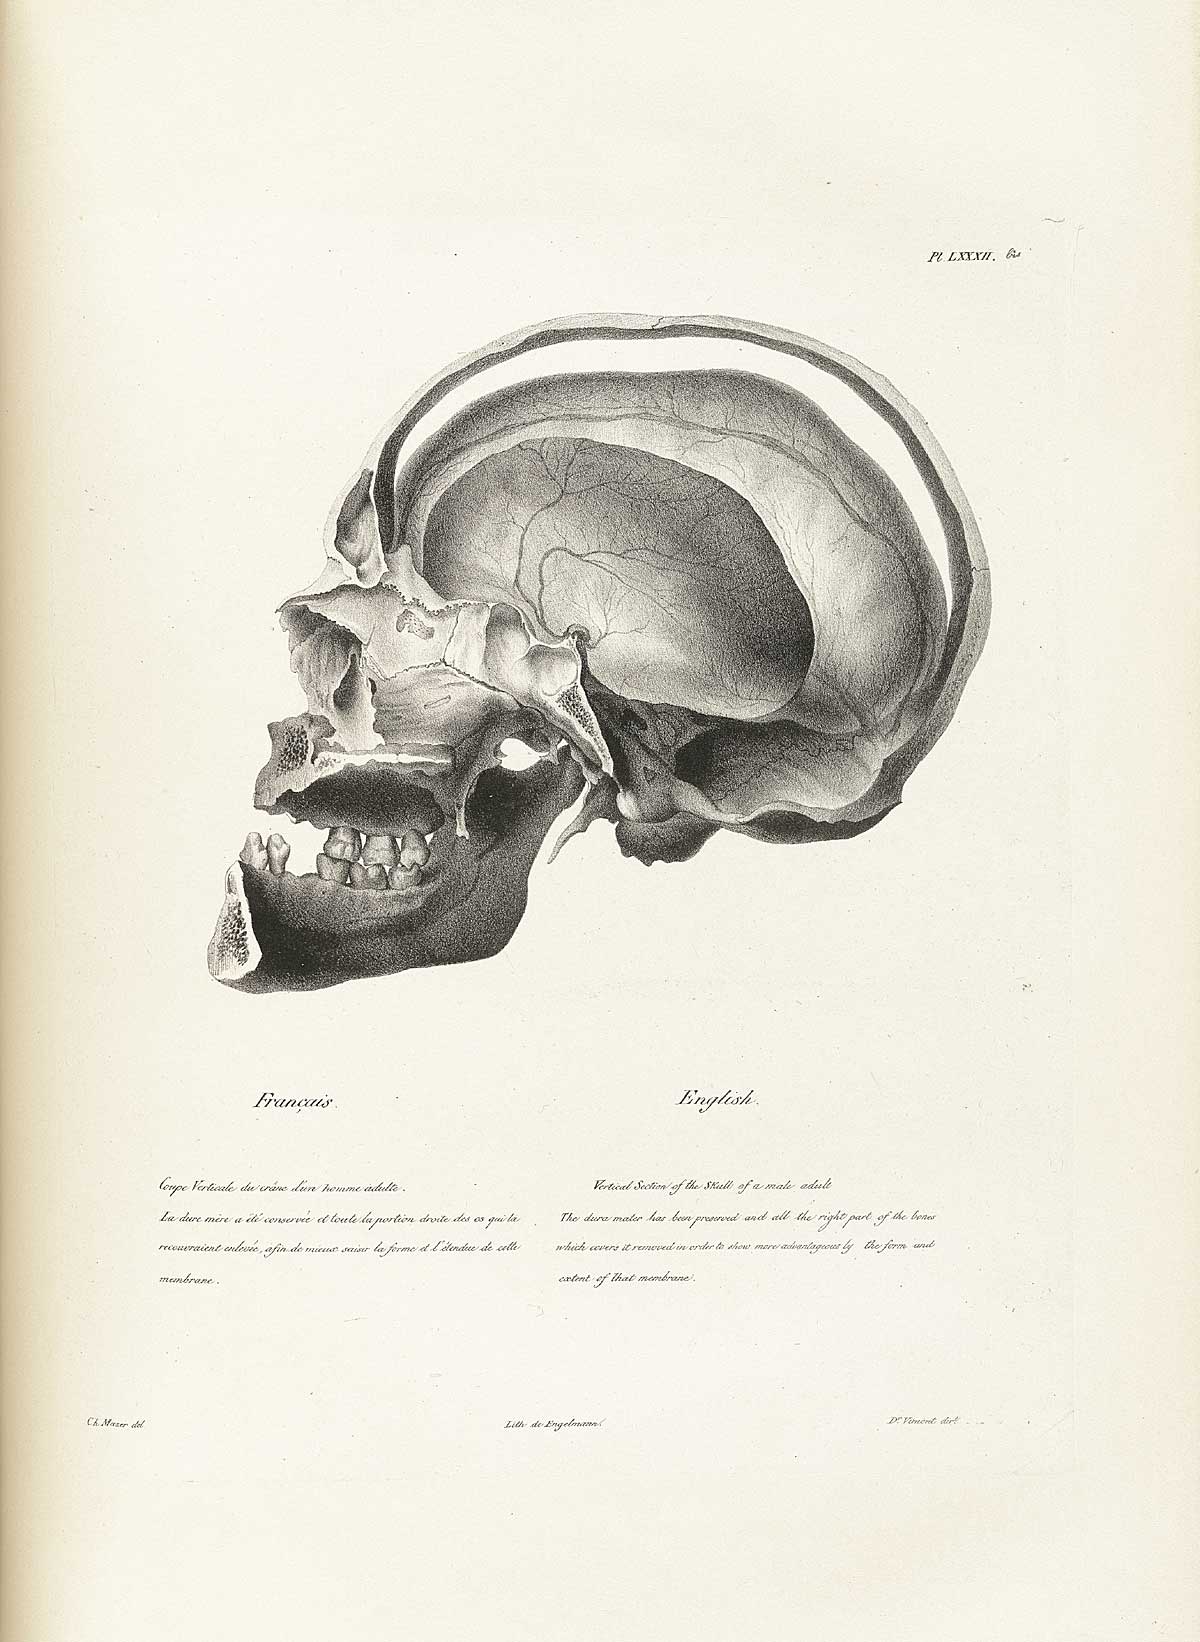 Table 82a of Joseph Vimont's Traité de phrénologie humaine et comparée, featuring the vertical secion of the skull of a male adult.